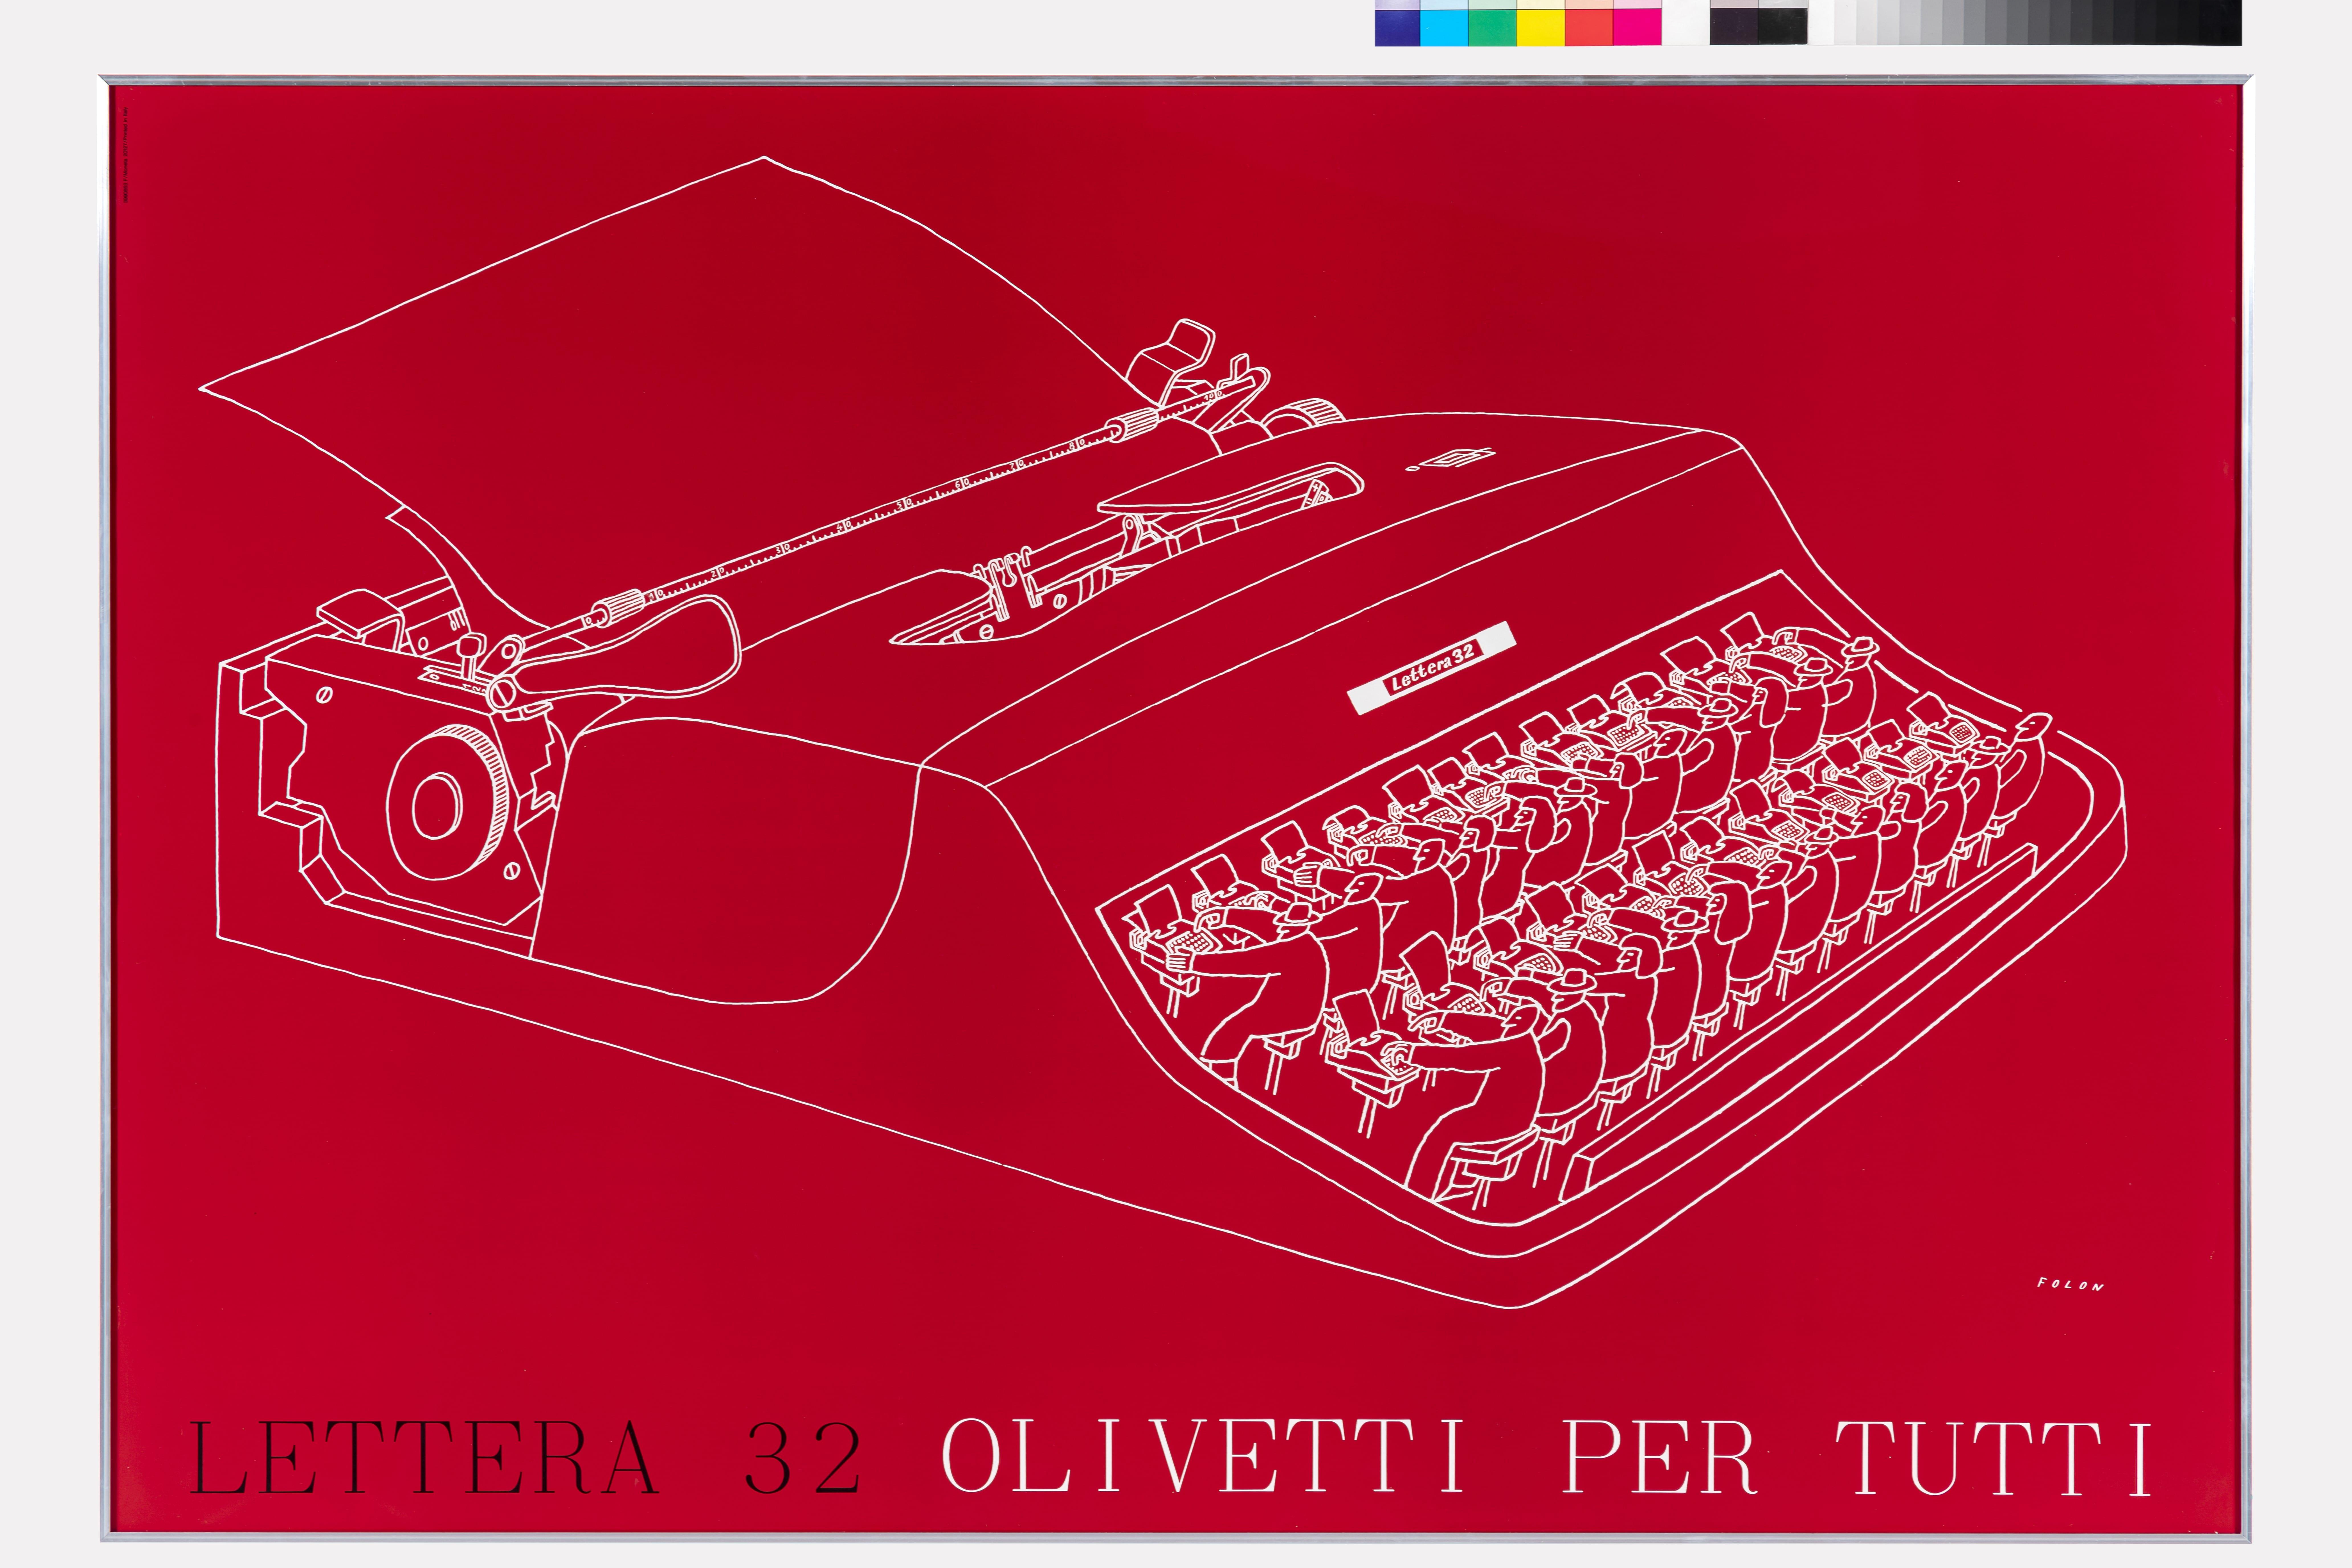 Illustratie op rood papier met witte inkt van een typemachine.